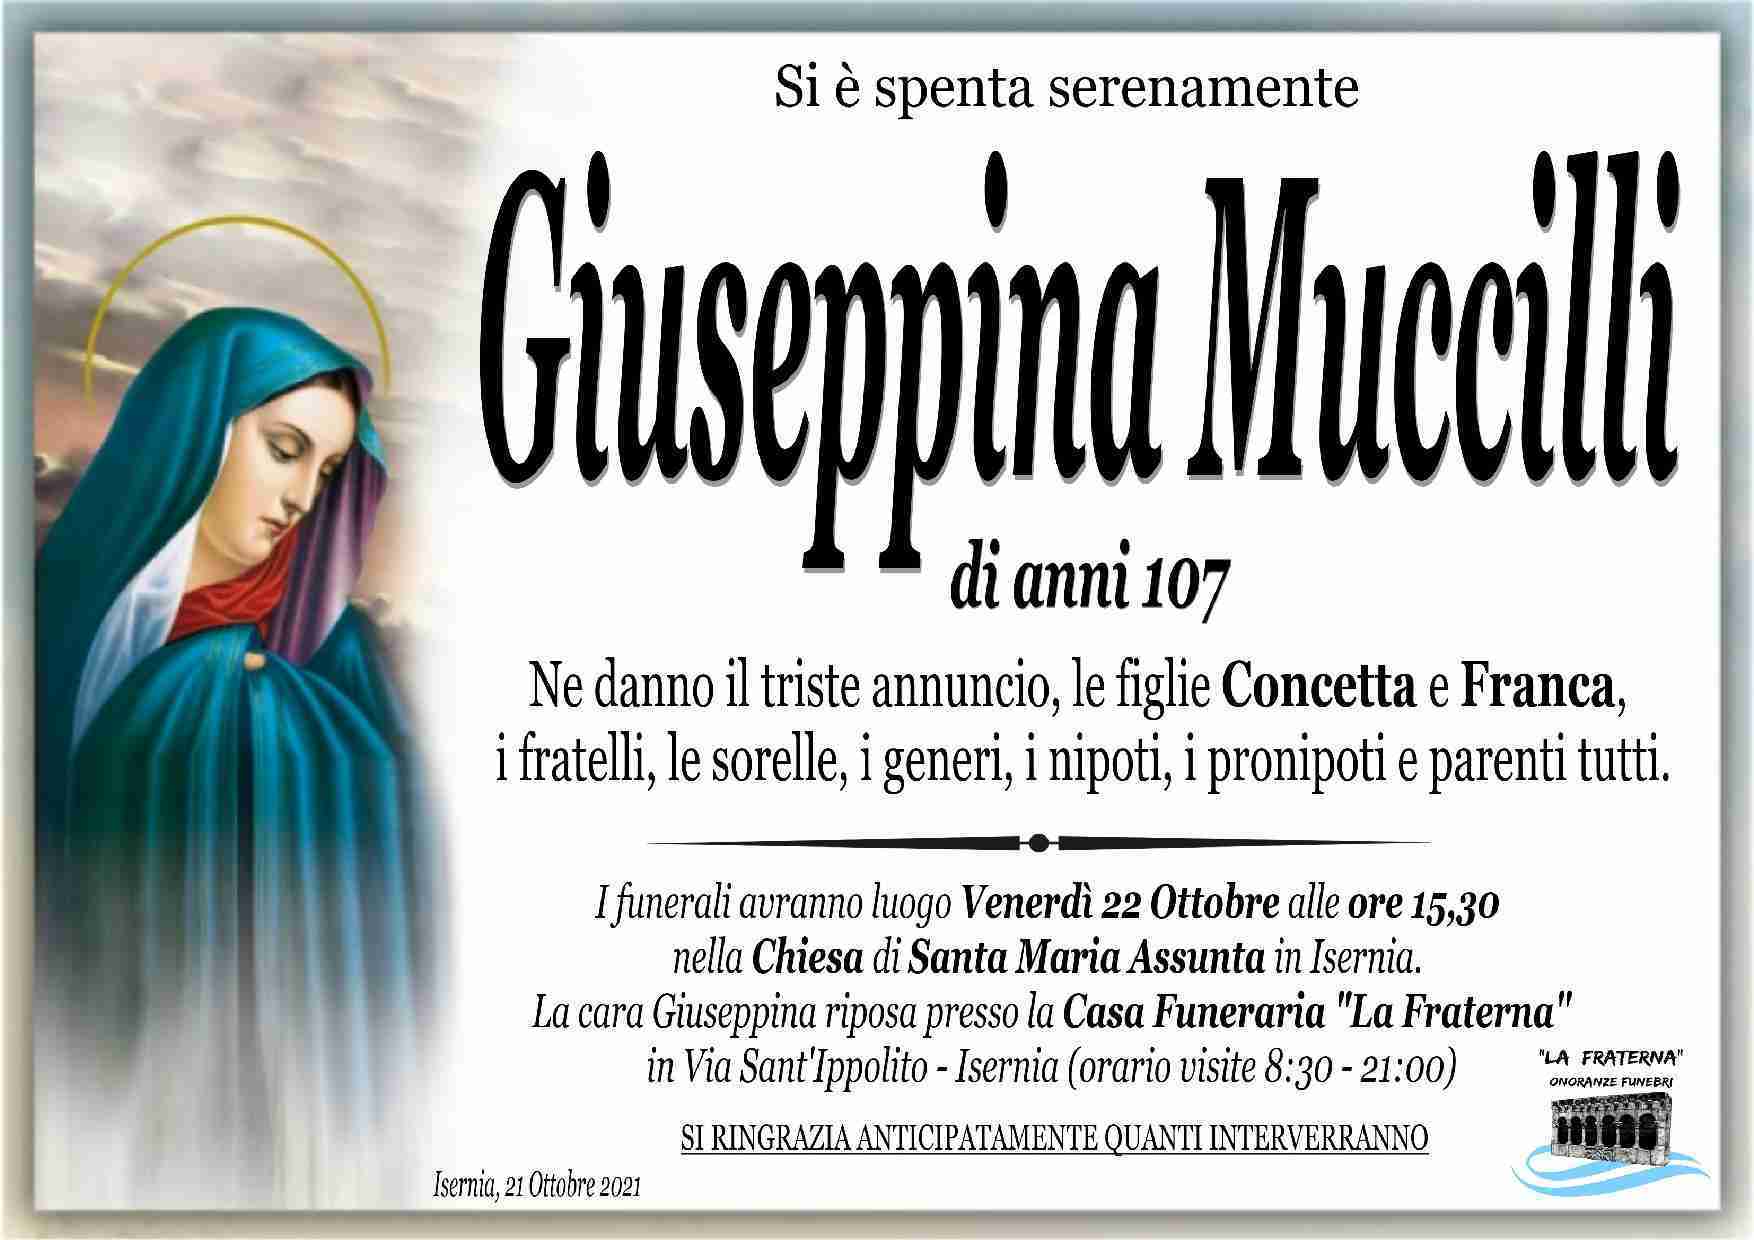 Giuseppina Muccilli